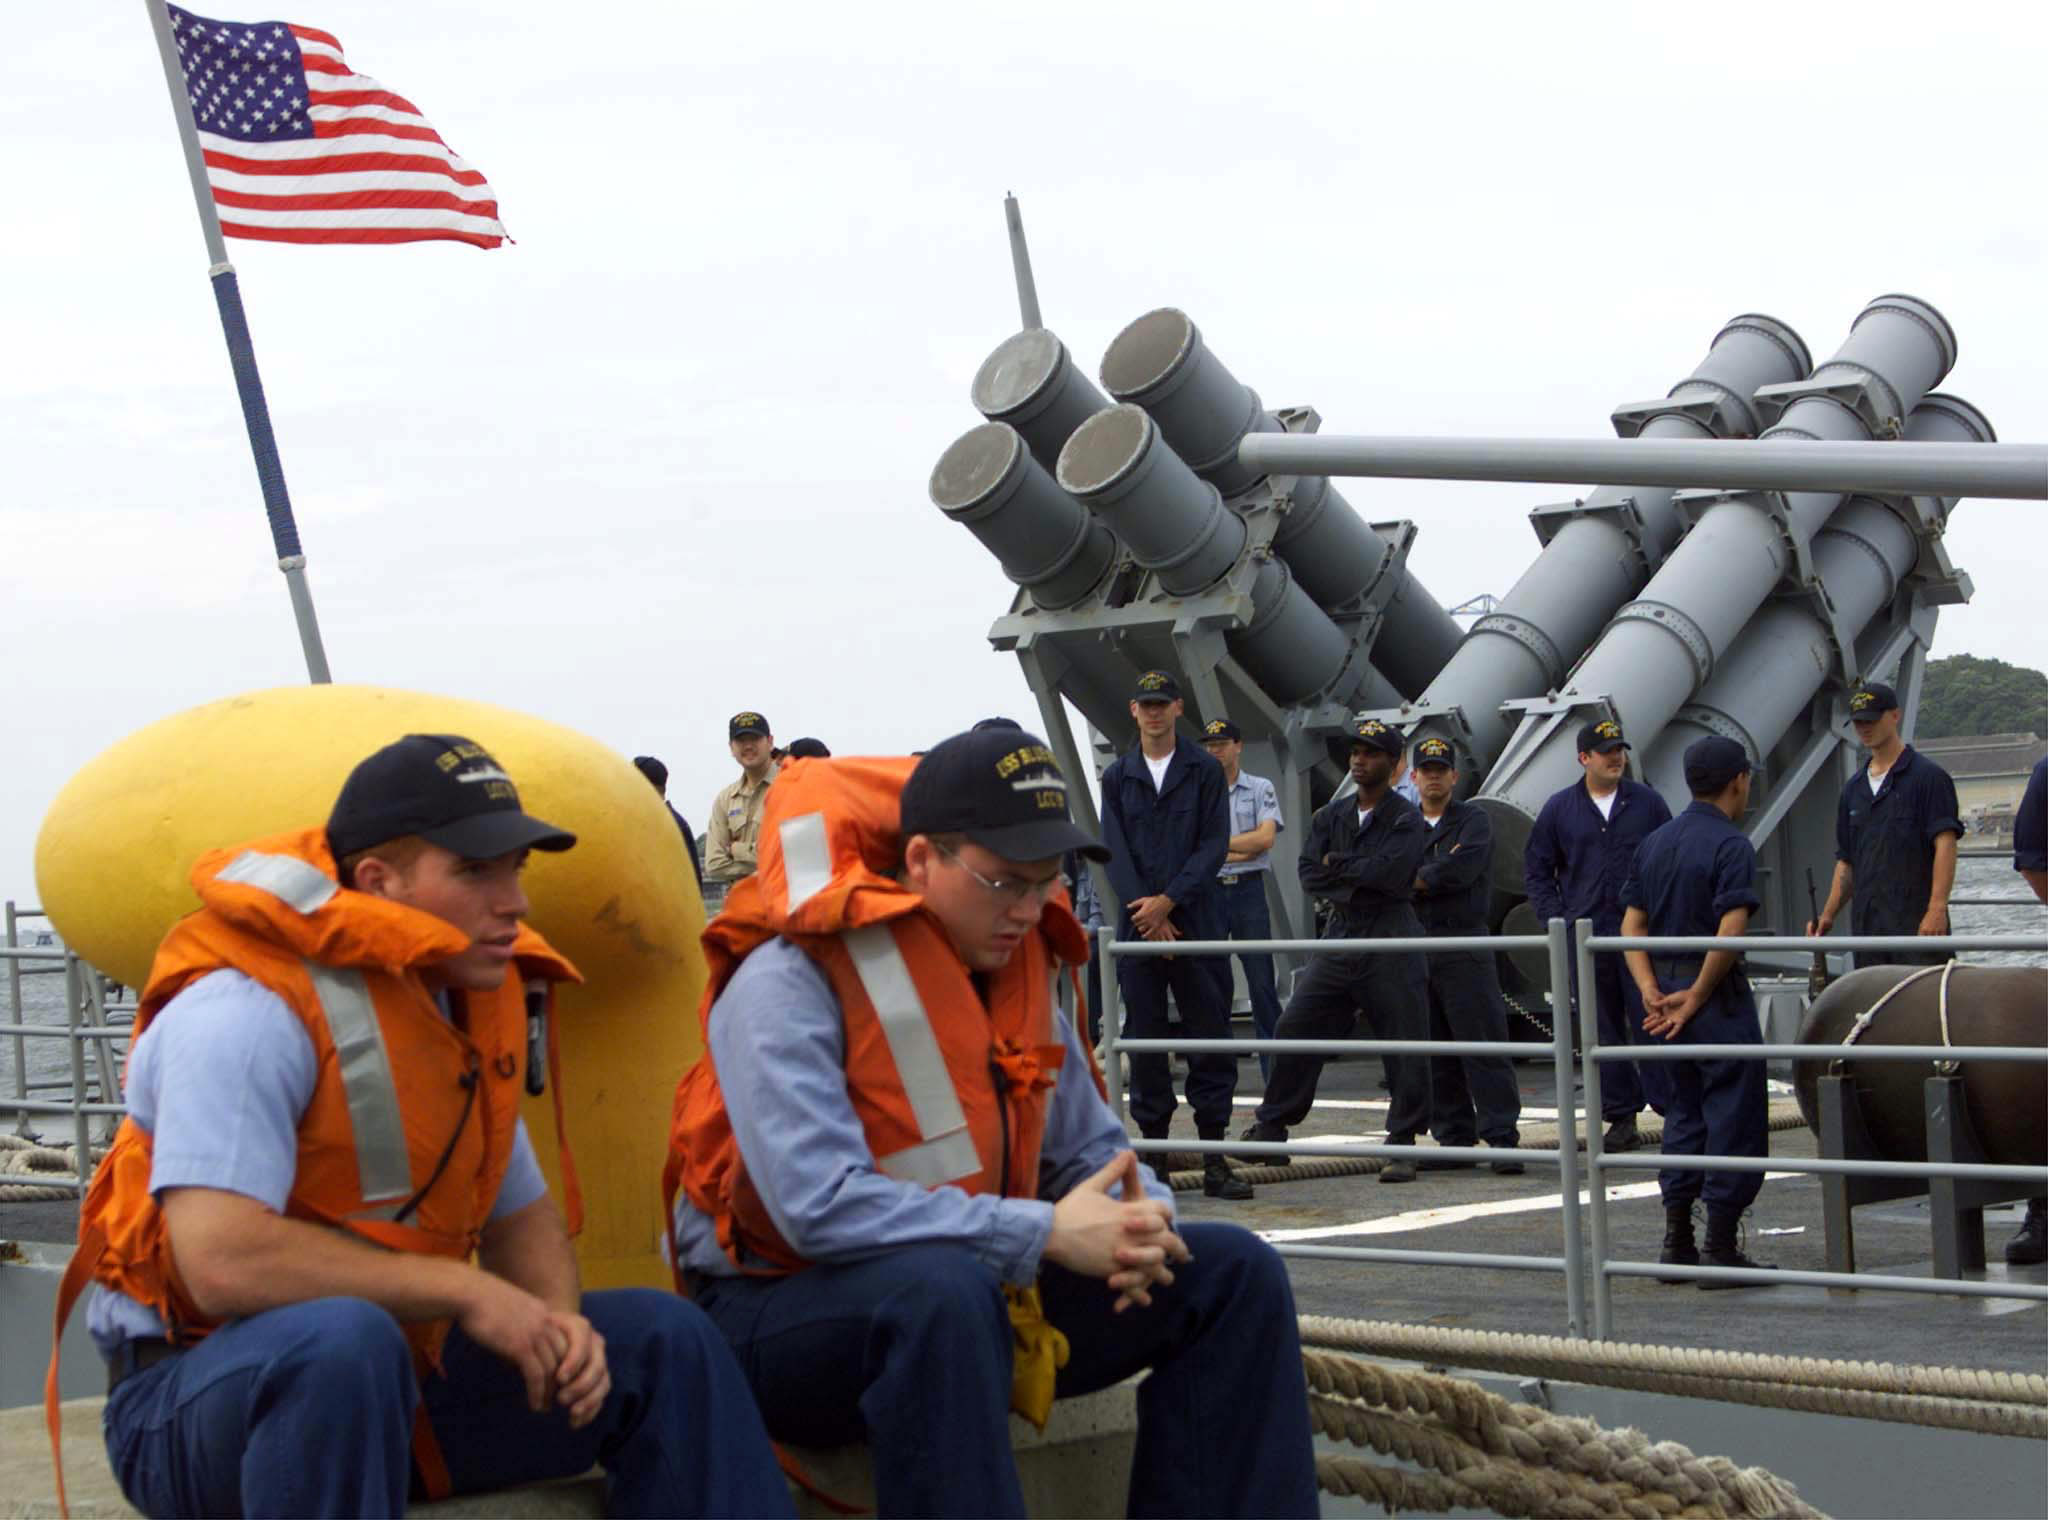 Αντιπυραυλικό σύστημα των ΗΠΑ στην Ιαπωνία προκαλεί κινέζικη αντίδραση